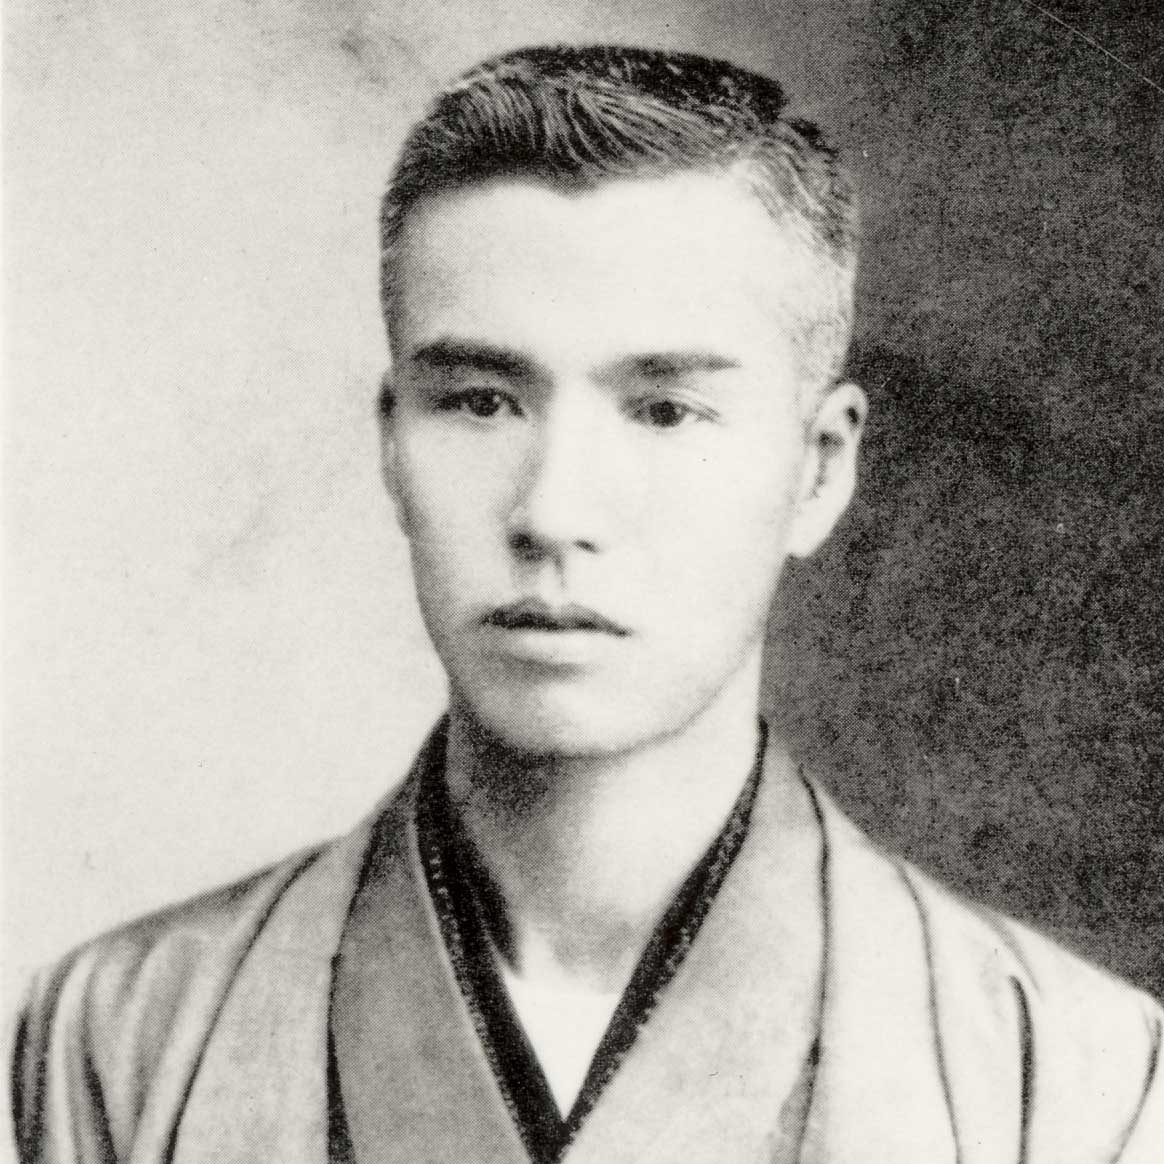 A young Kintaro Hattori, founder of Seiko in 1890 (Image: Grand Seiko)